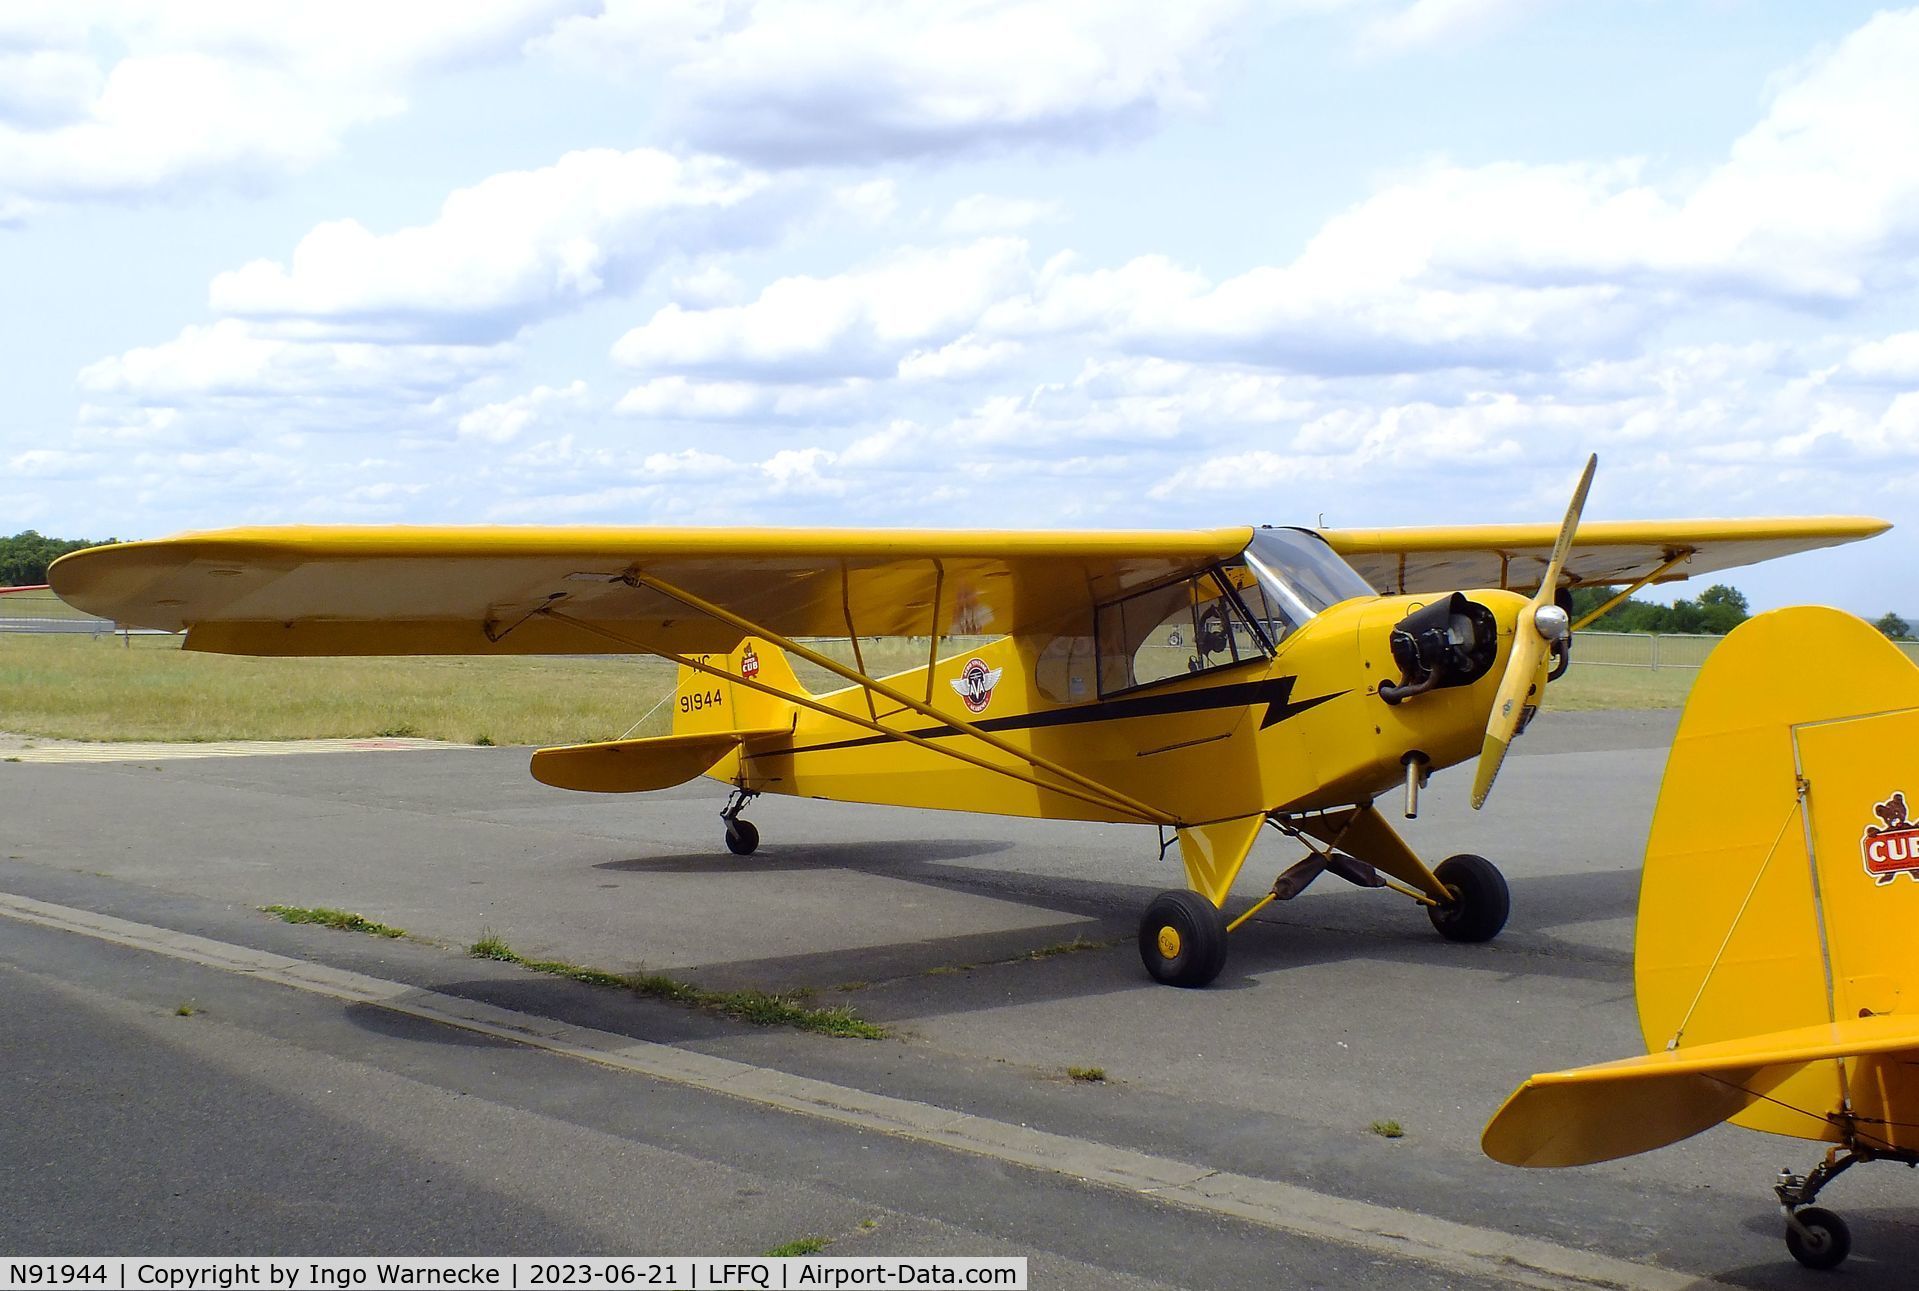 N91944, Piper J3C-65 Cub C/N 18445, Piper J3C-65 Cub at the Musee Volant Salis/Aero Vintage Academy, Cerny